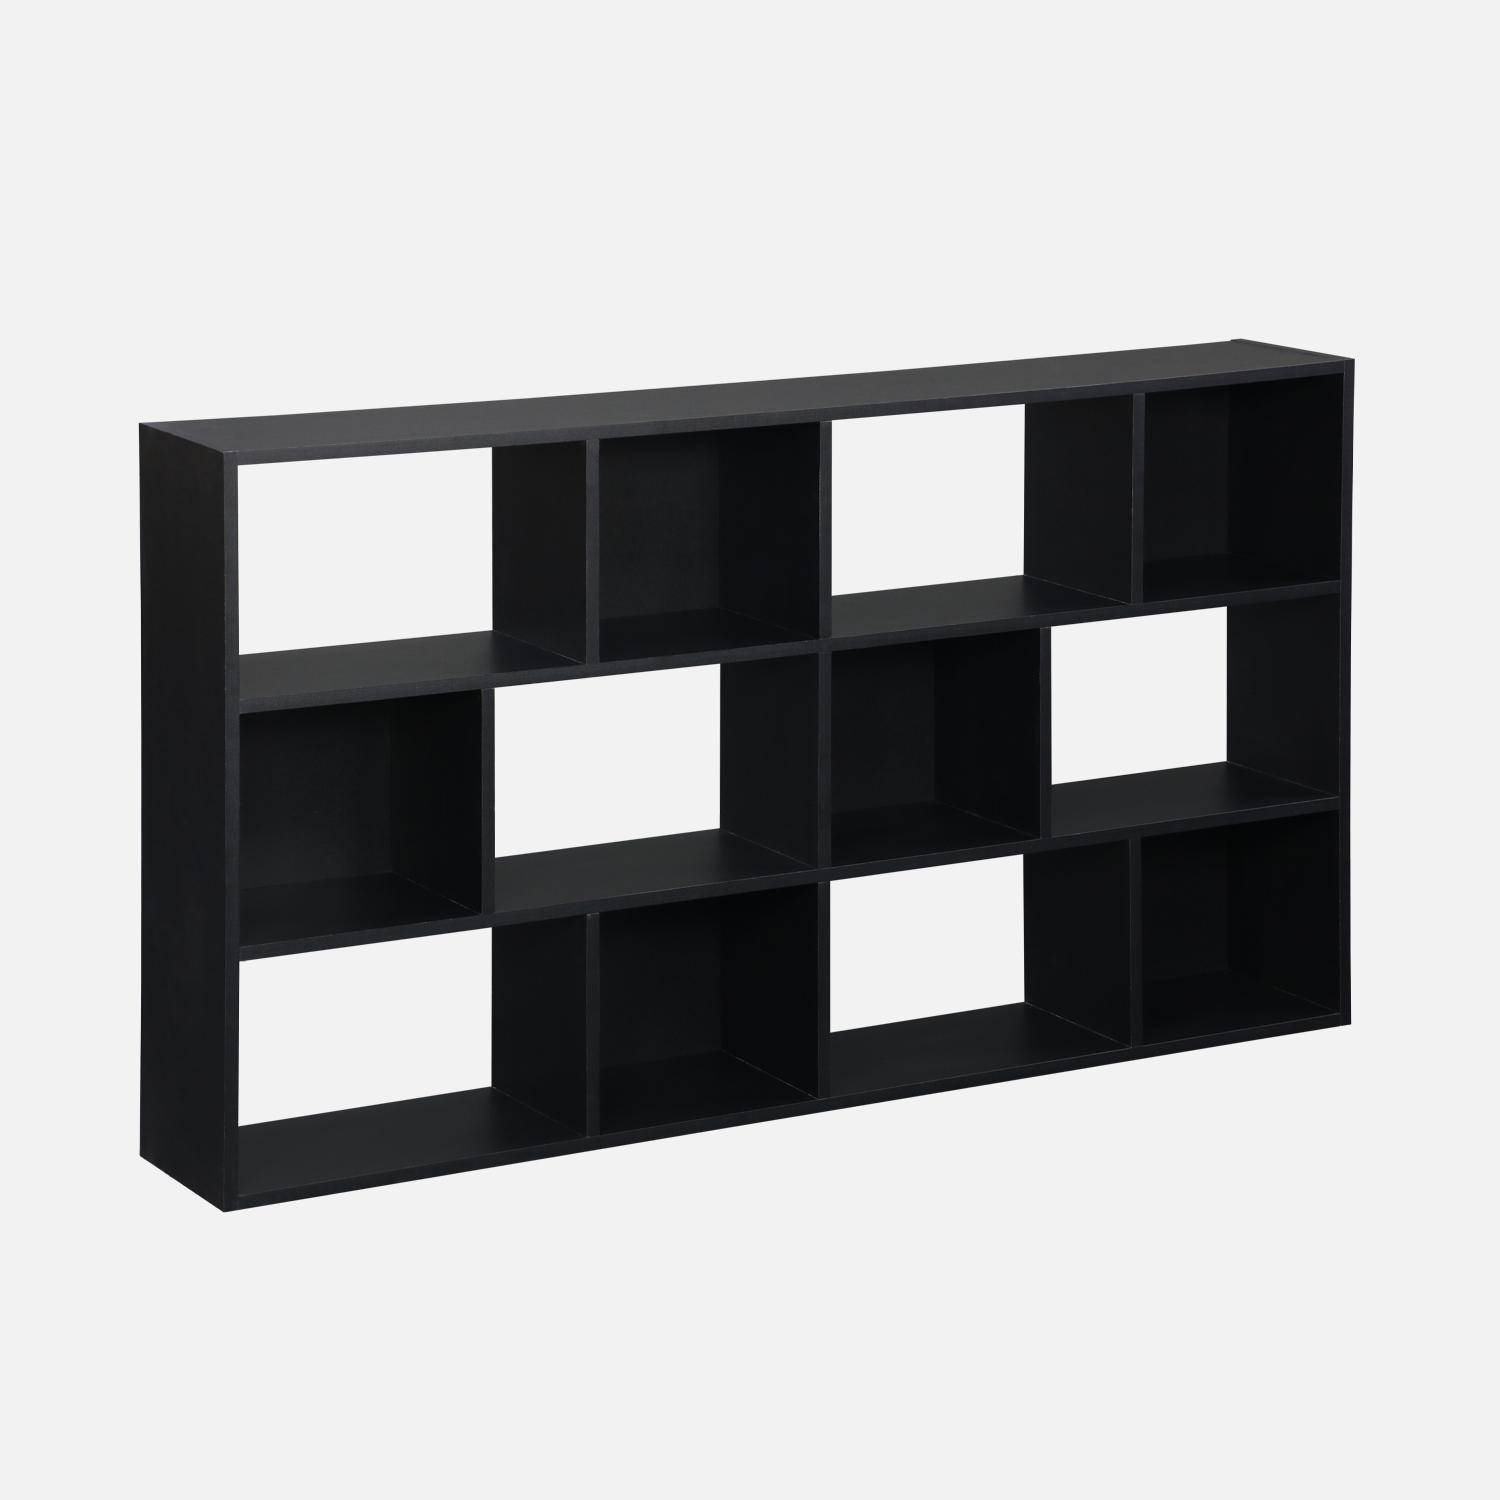 Bibliothèque design asymétrique noire, Pieter, 3 étagères, 12 compartiments de rangement Photo1